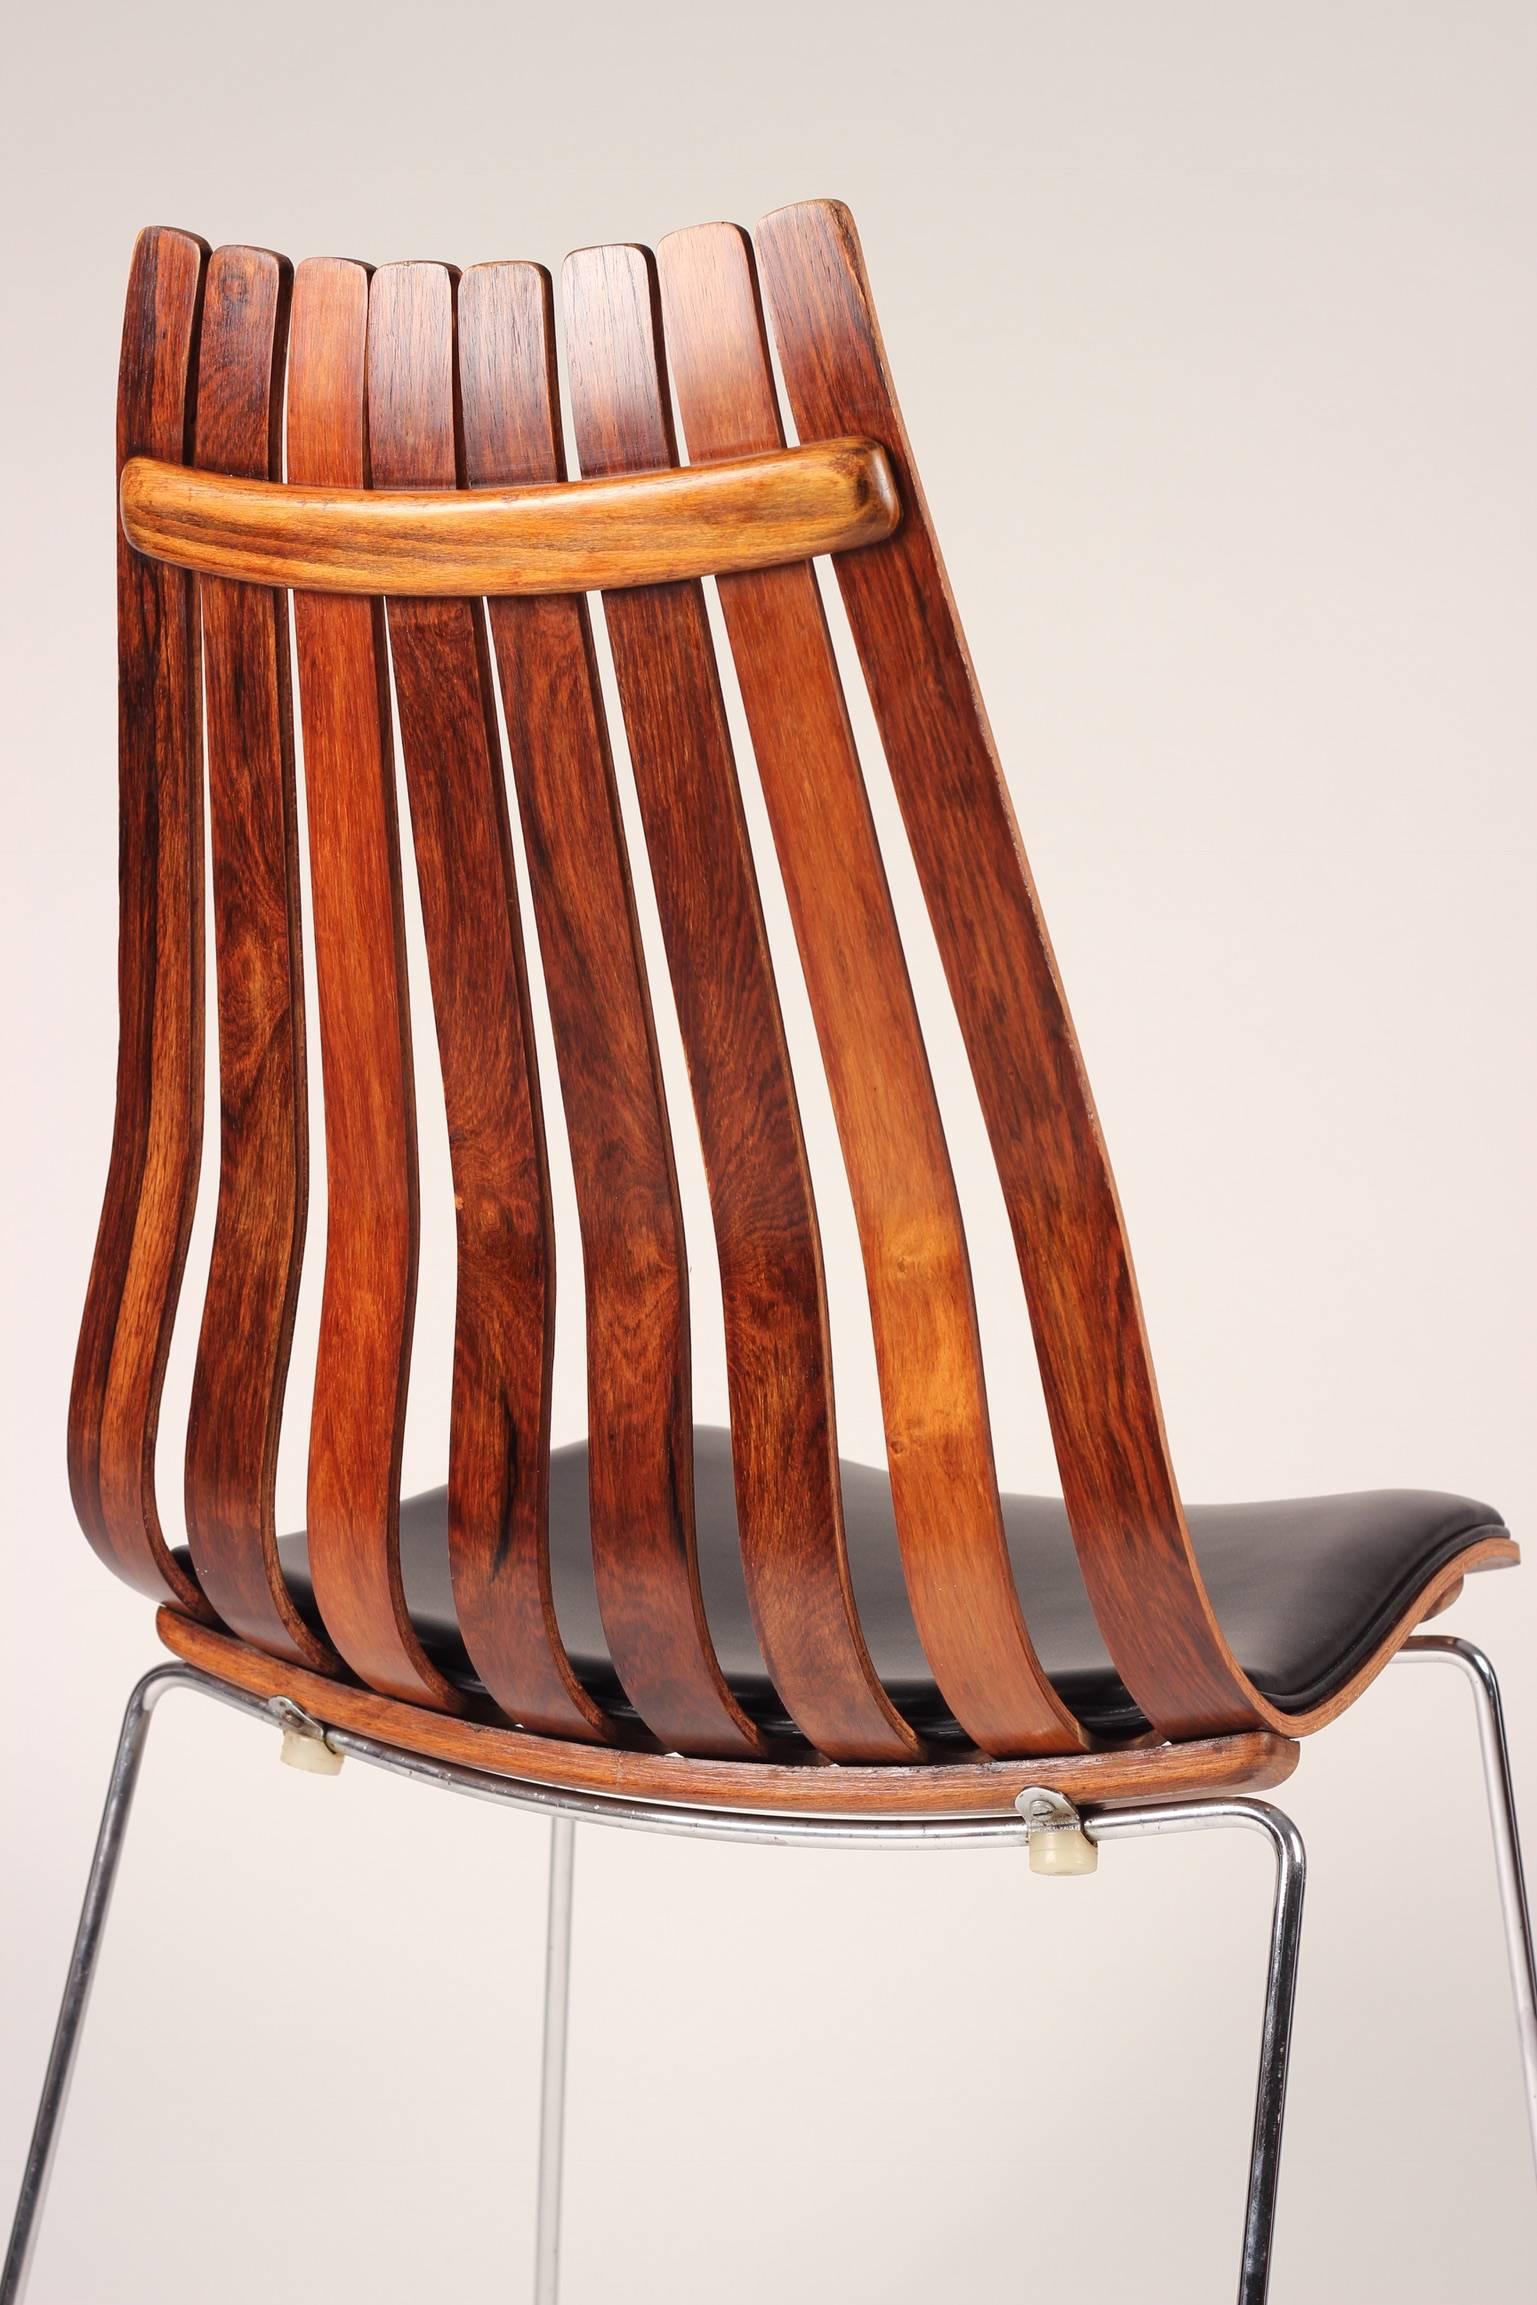 Un ensemble de six chaises Scandia senior à dossier haut de Hans Brattrud pour Hove Mobler. Exemple classique d'un excellent design moderne scandinave datant de 1958, cette chaise est l'une des plus belles à émerger de la Norvège d'après-guerre,